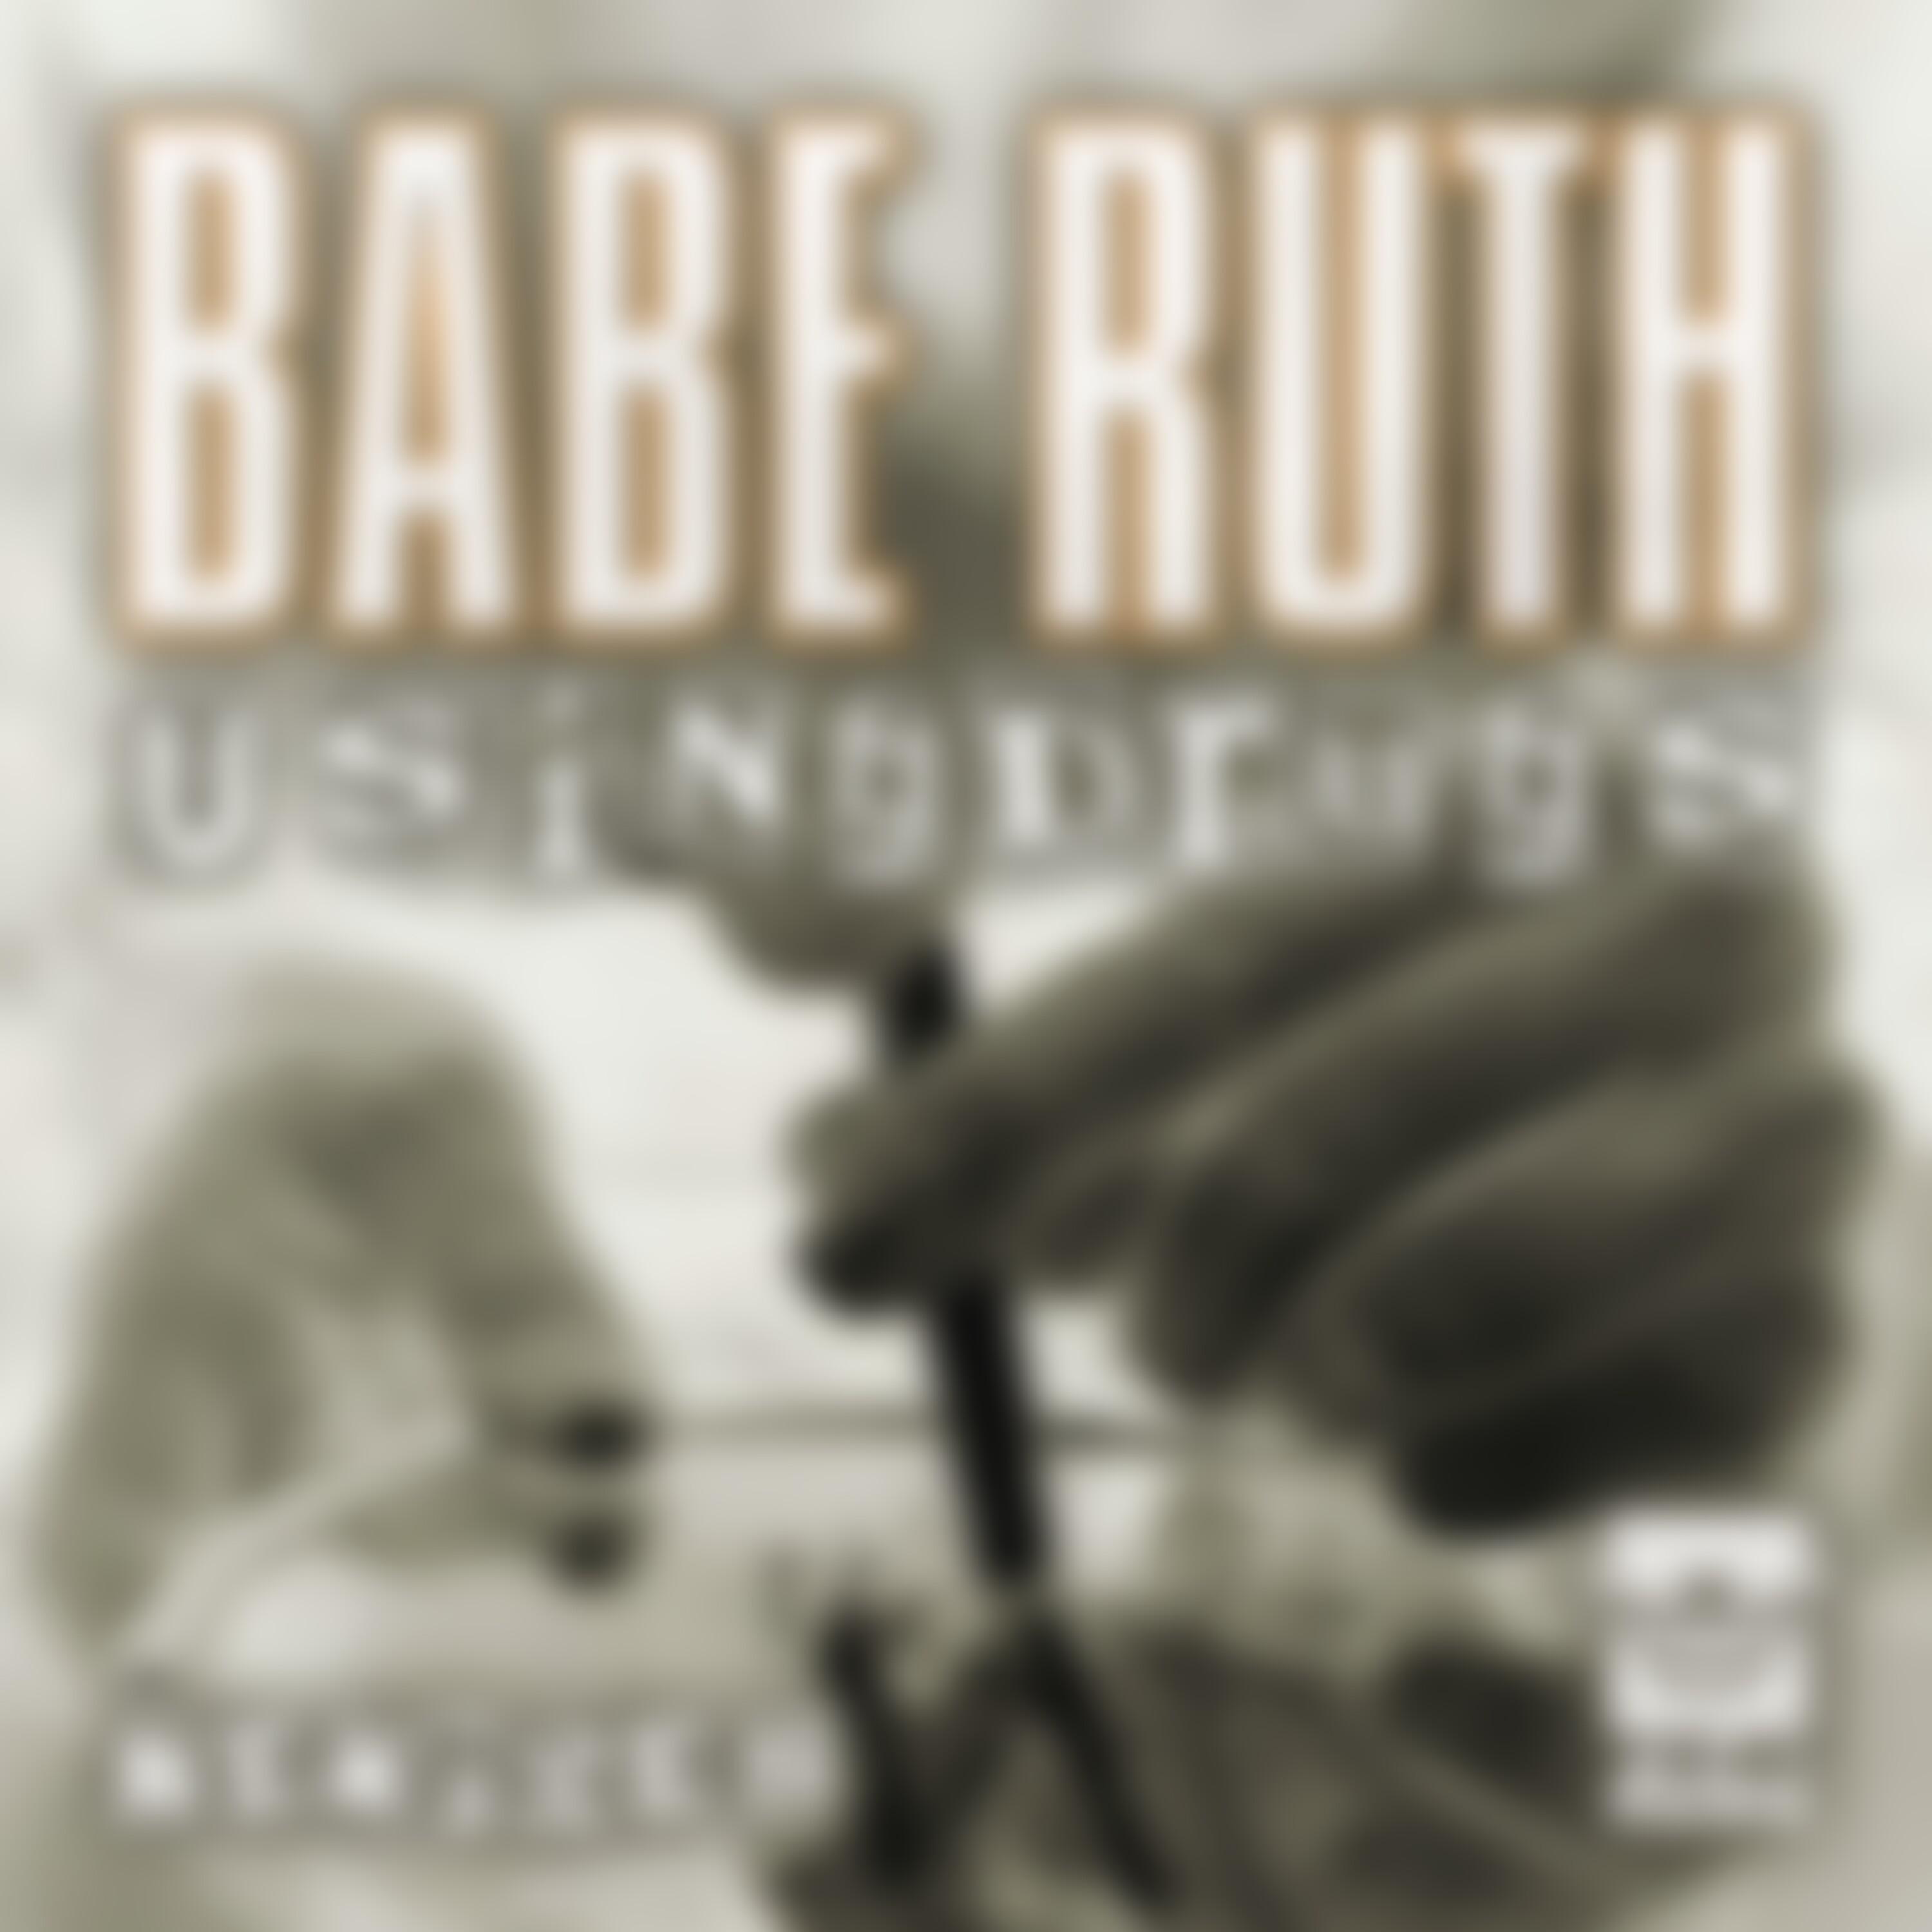 Babe Ruth - Using Drugs (DJ Jaces Jacked up Mix)